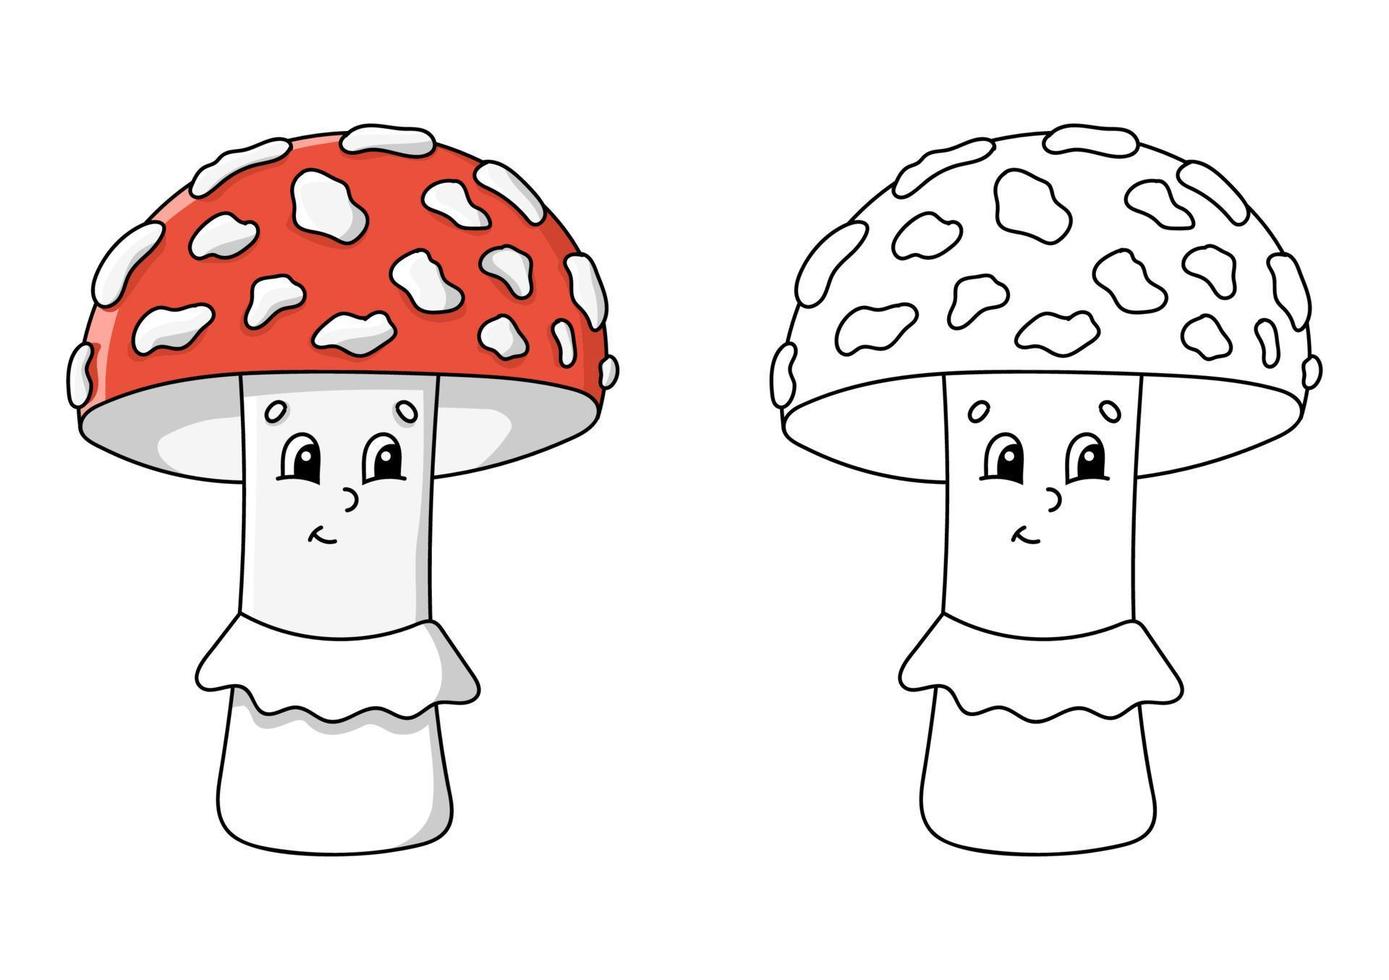 pagina del libro da colorare per bambini. fungo amanita. personaggio in stile cartone animato. illustrazione vettoriale isolato su sfondo bianco.